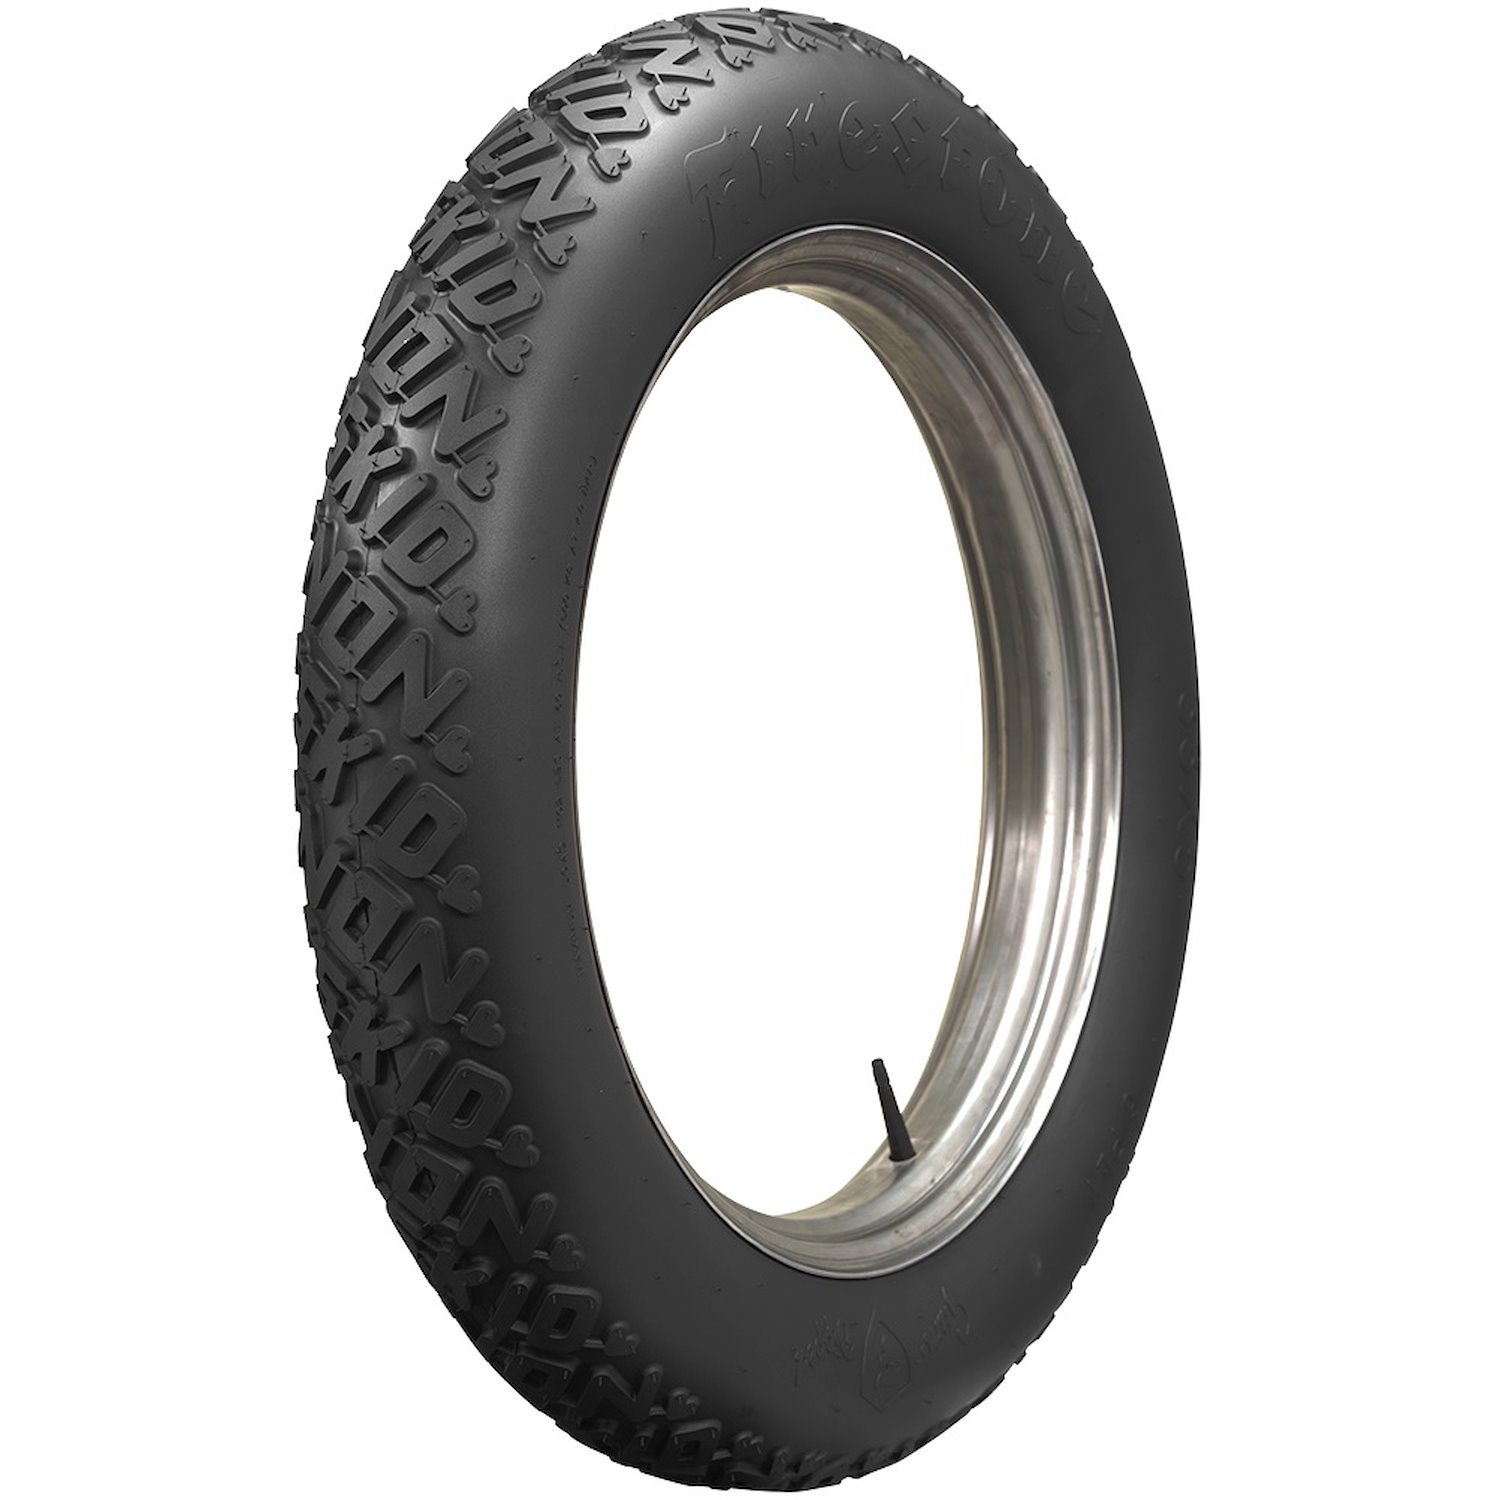 806010 Tire, Firestone Non-Skid, All Black, 35x5